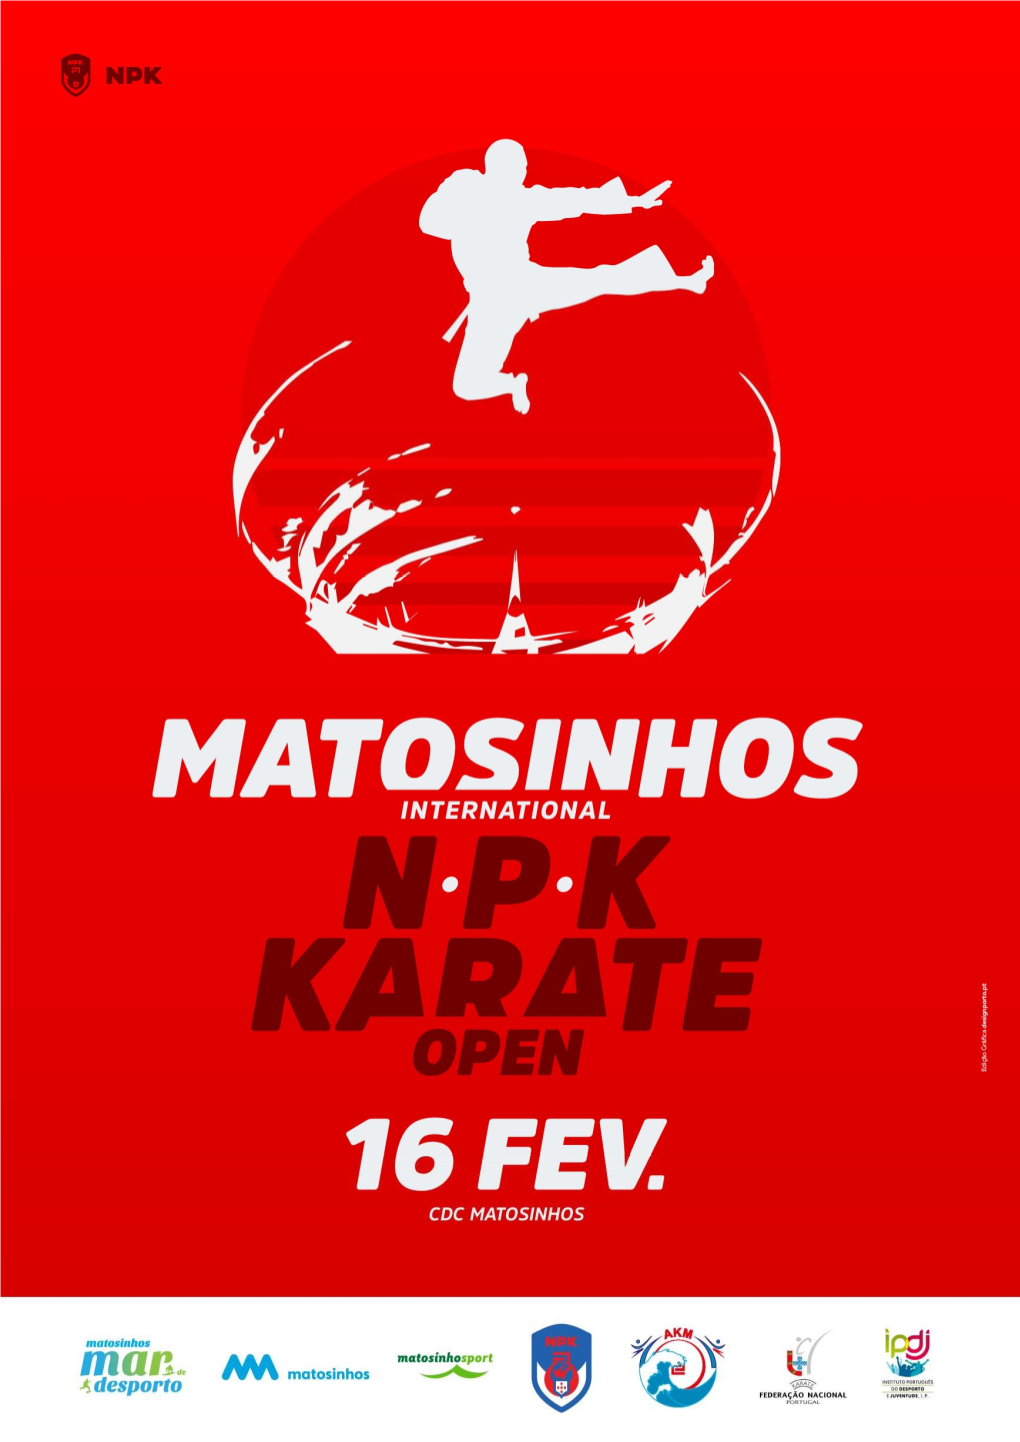 Matosinhos International NPK Karate Open 2019 Se Irá Realizar No Próximo Dia 16 De Fevereiro De 2019, Naquela Que É a Sua 17ª Edição E a 8ª De Âmbito Internacional